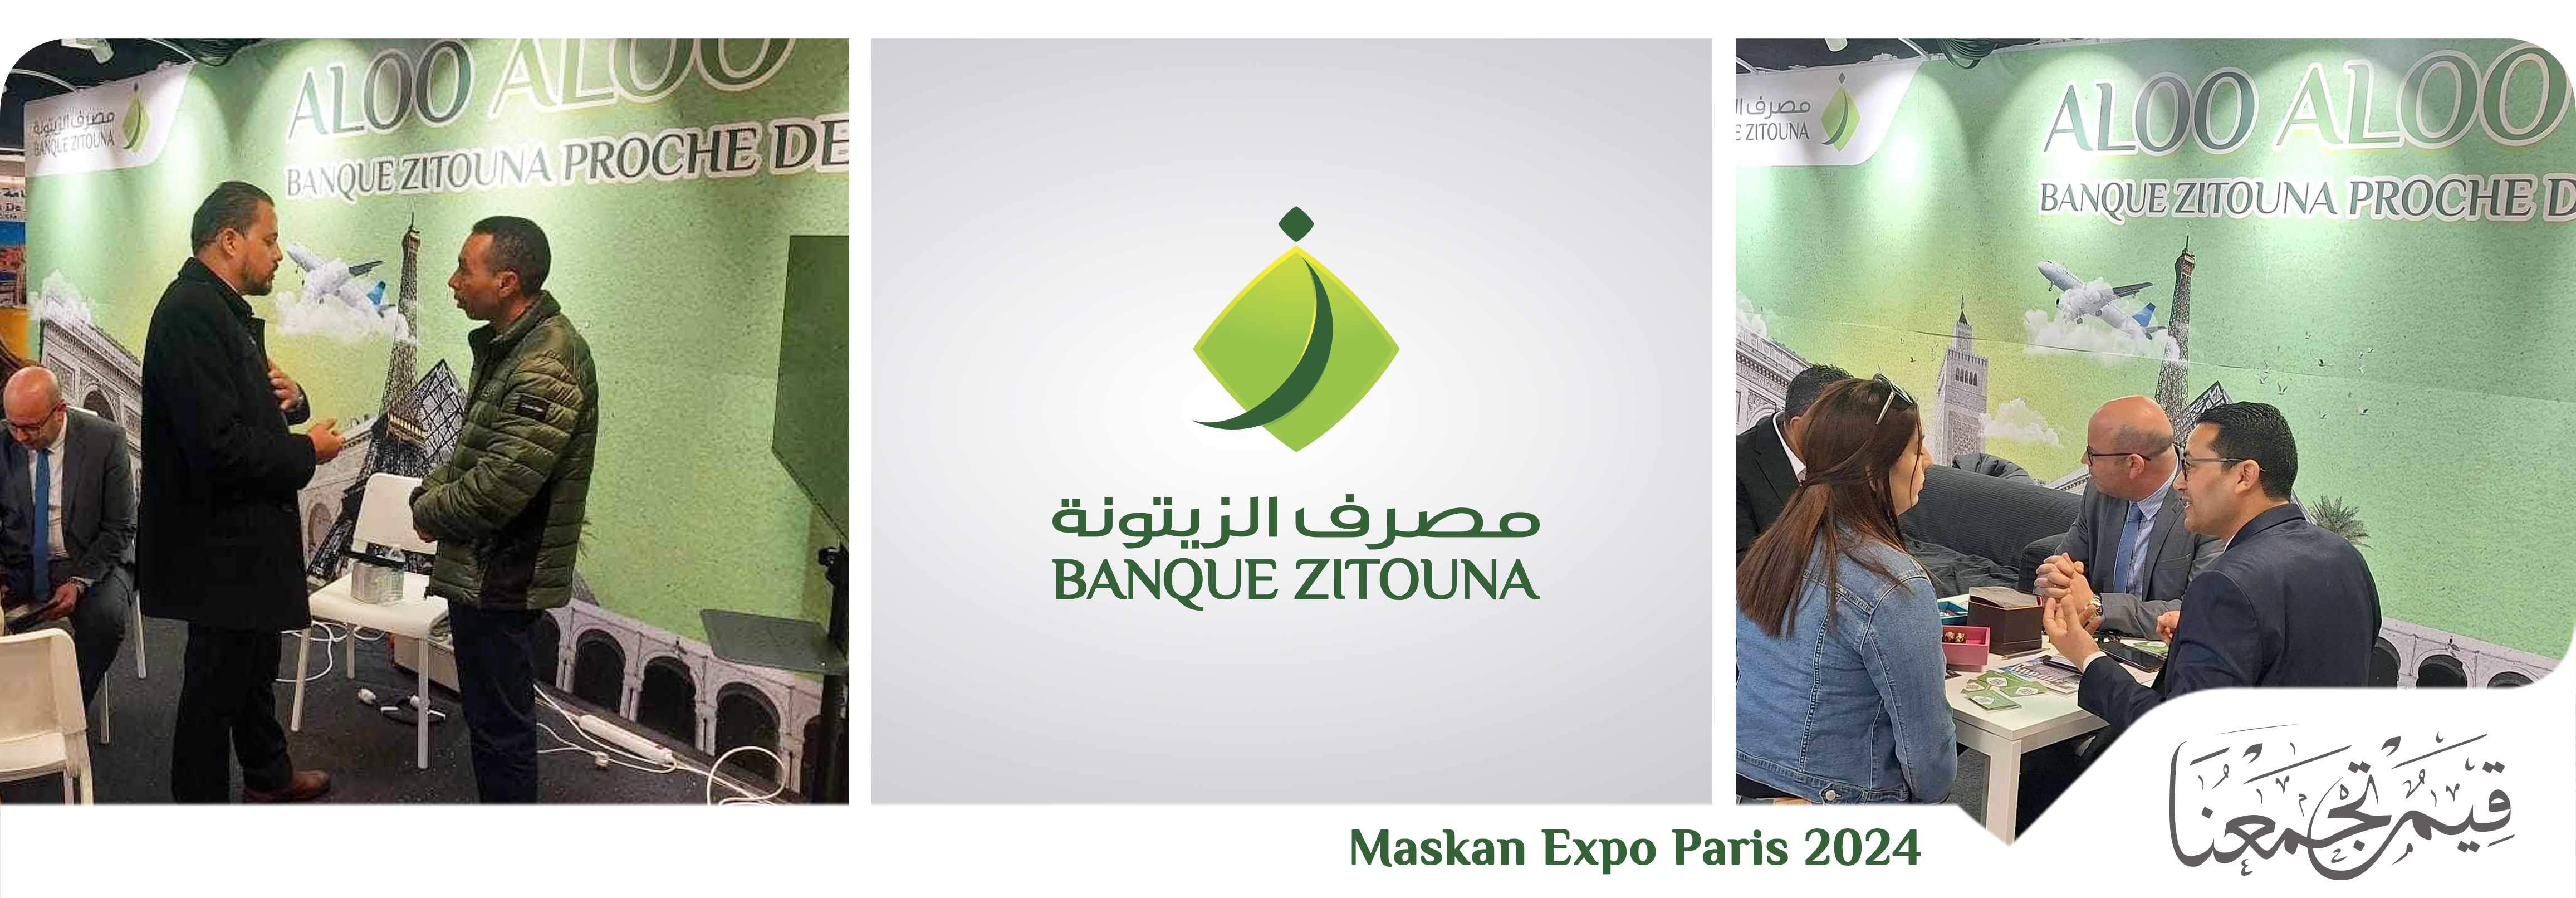 Banque Zitouna sponsor Maskan Expo Paris 2024 